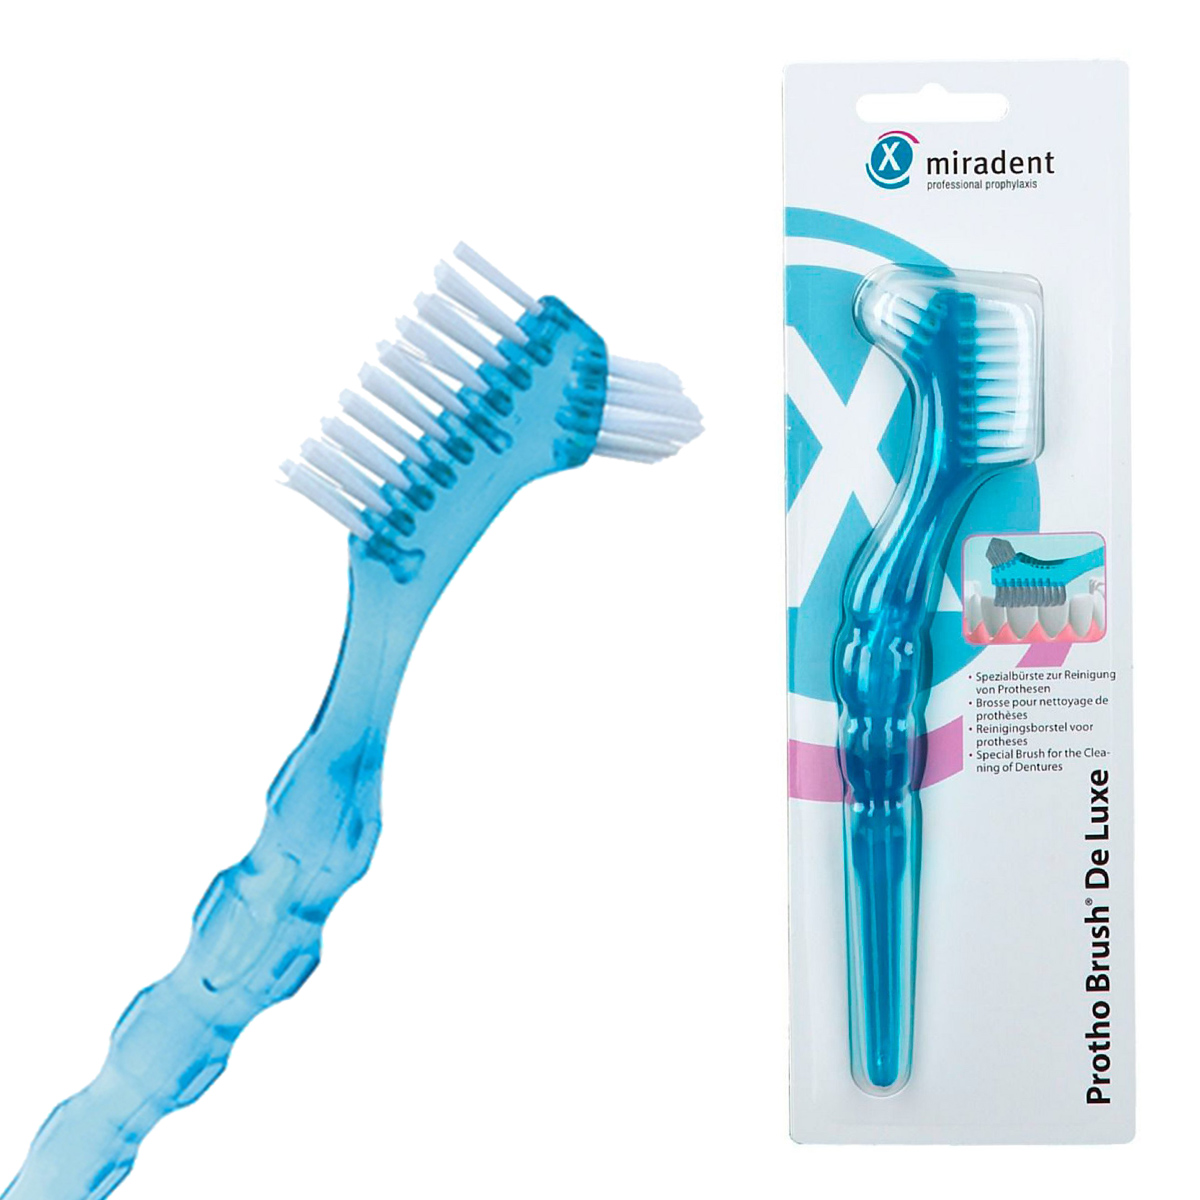 Зубная щетка miradent щетка для протезов miradent protho brush de luxe голубая